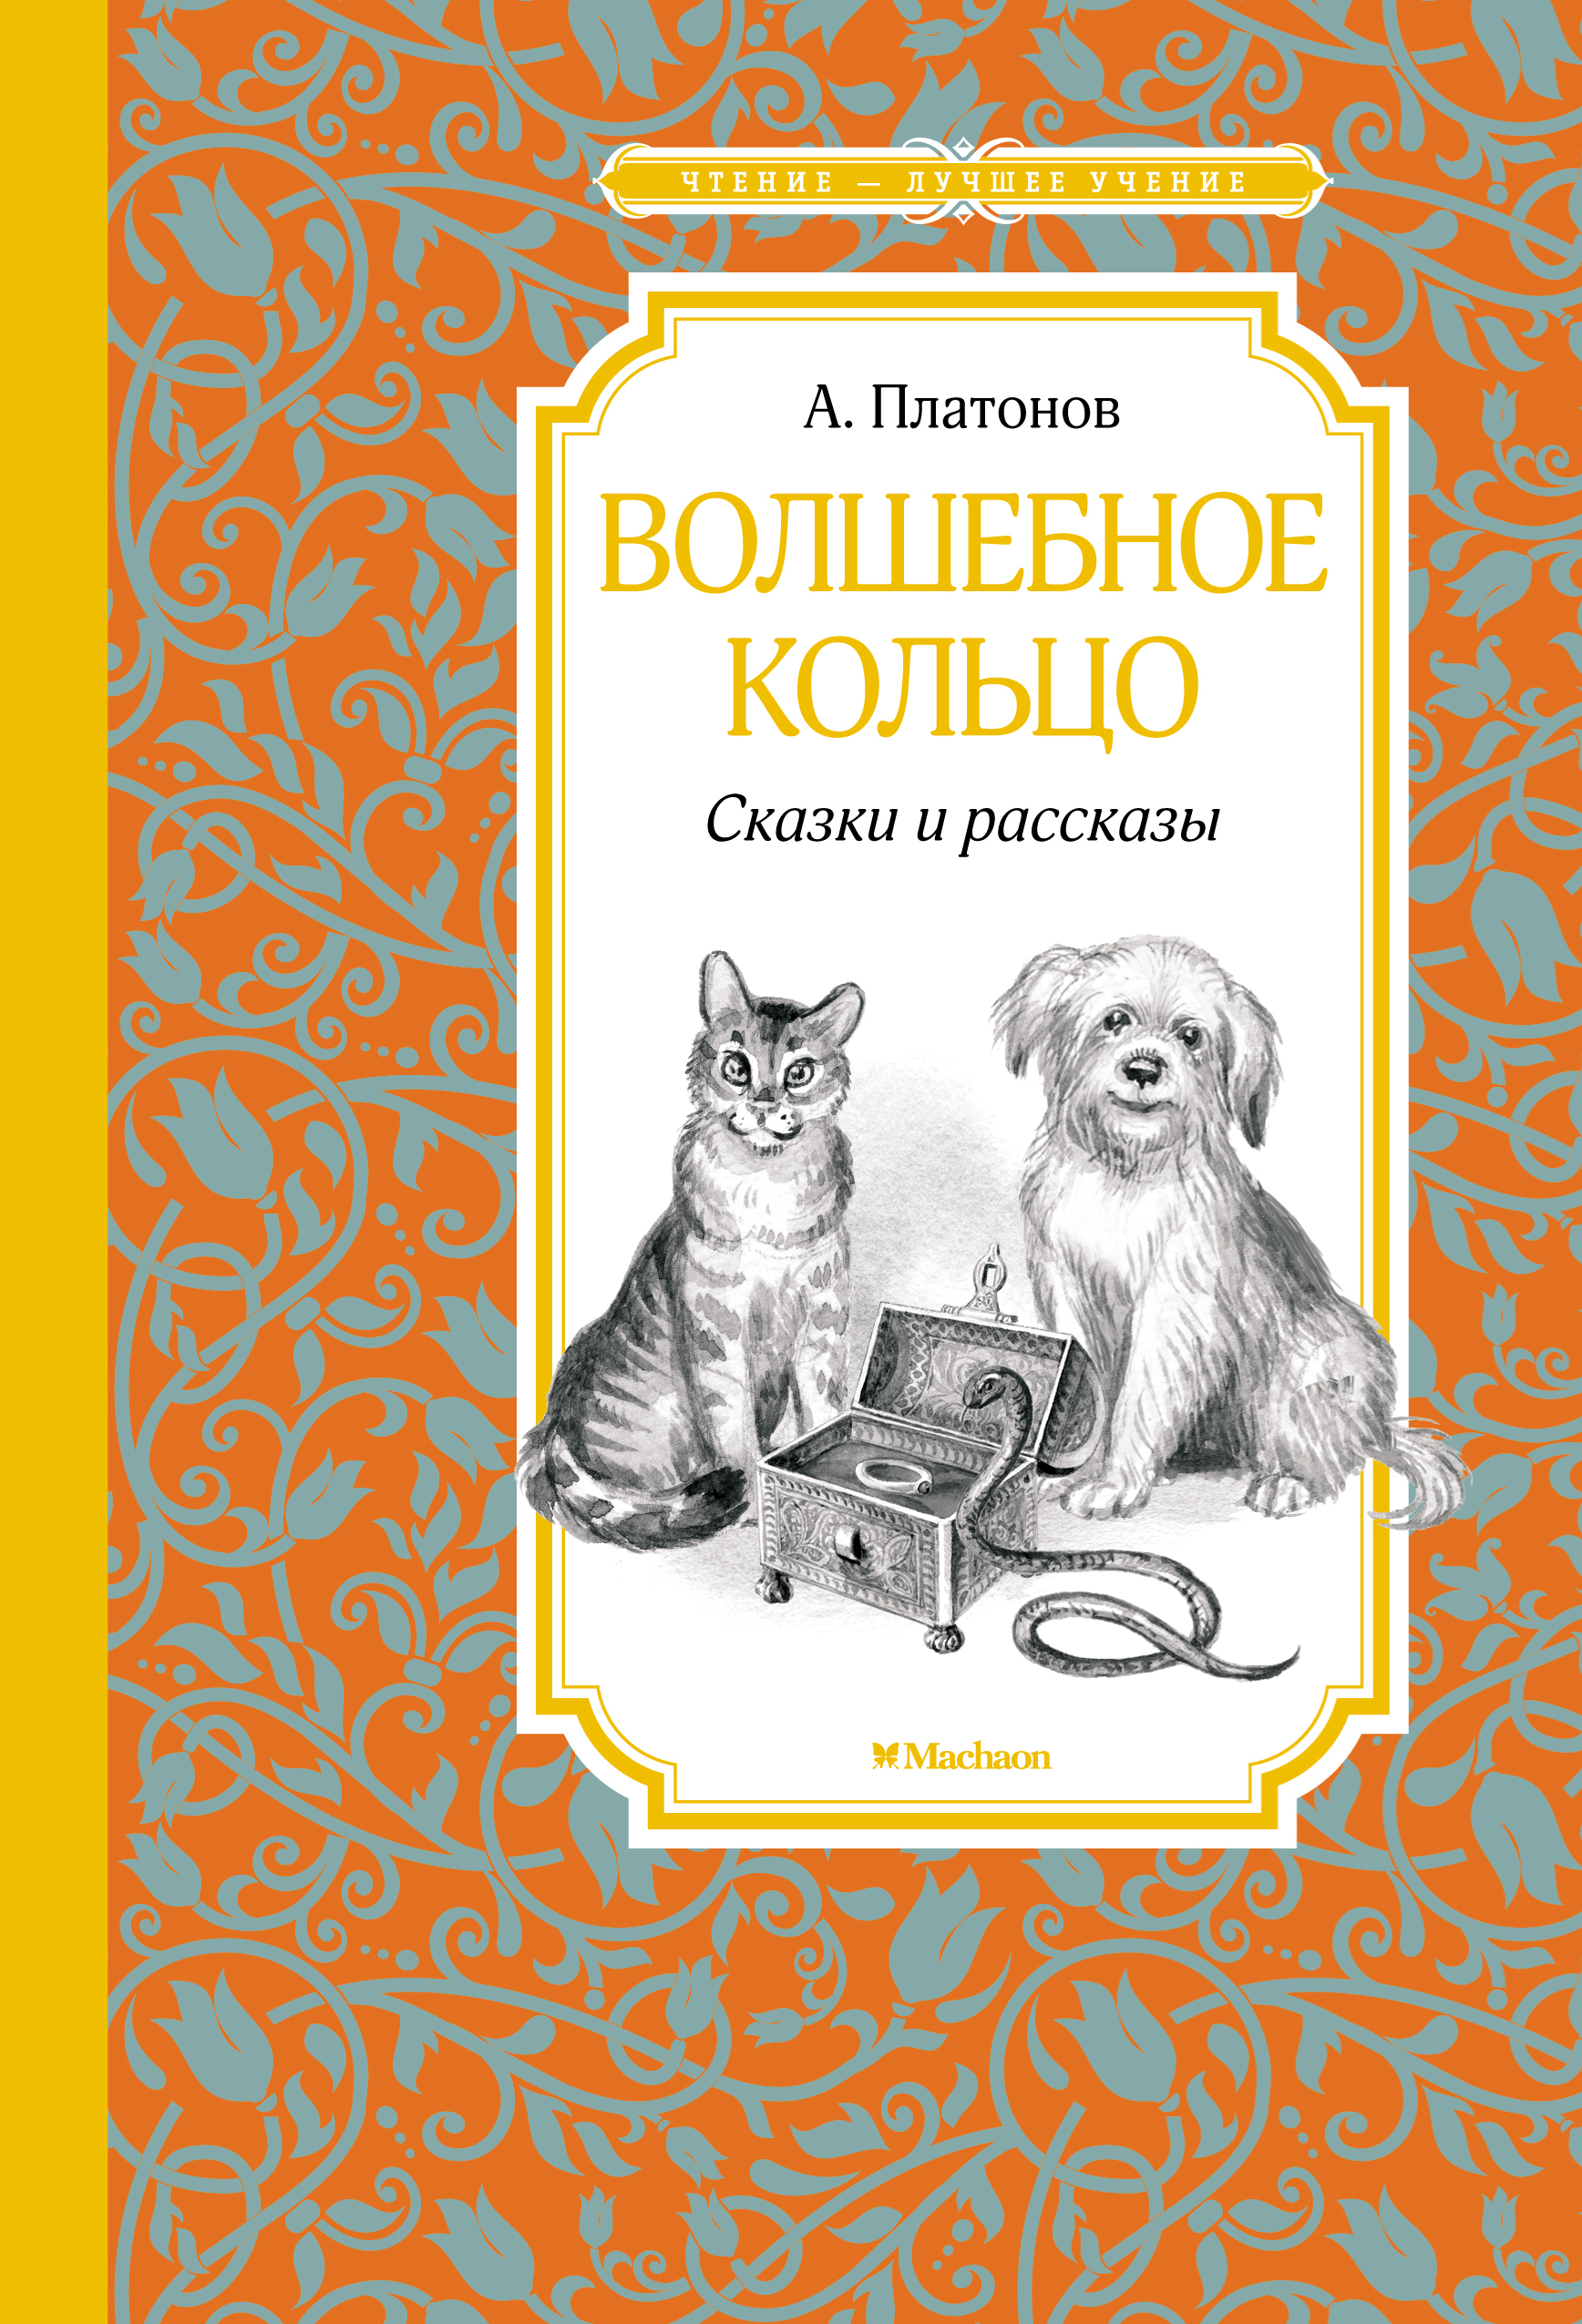 Платонов Андрей Платонович Волшебное кольцо: сказки и рассказы